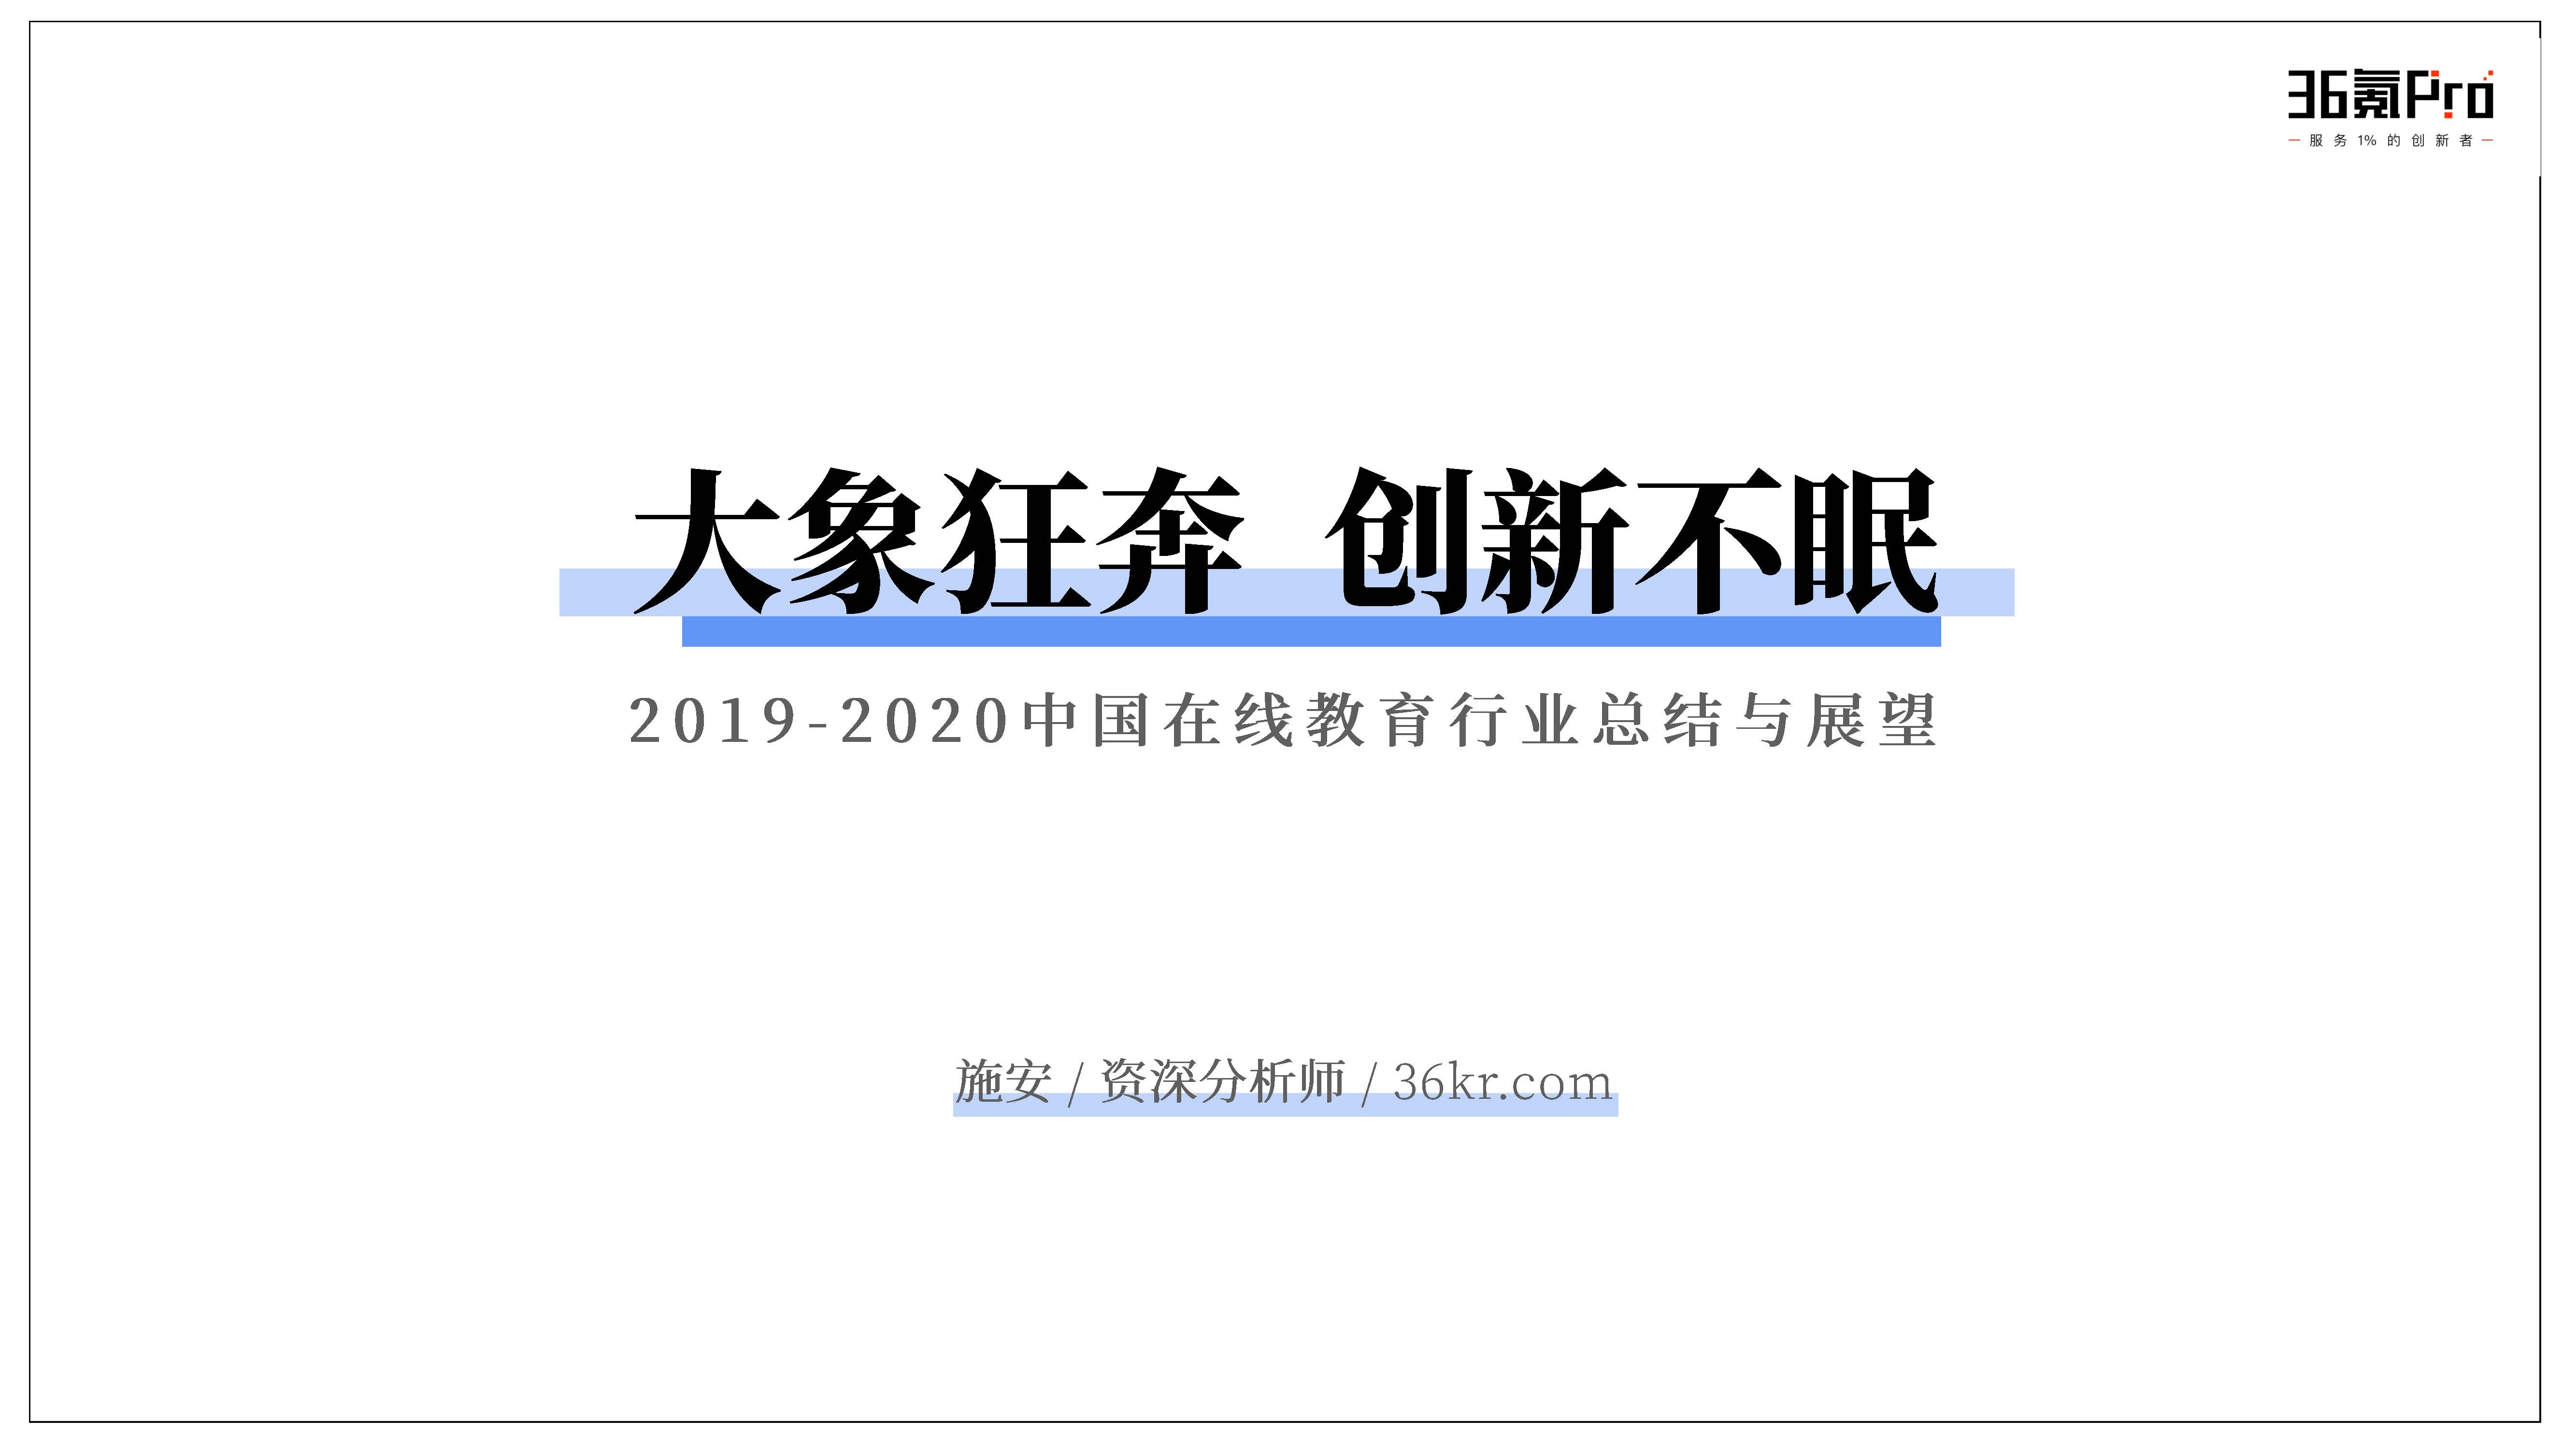 36氪：2019-2020中国在线教育行业总结与展望（附下载地址）